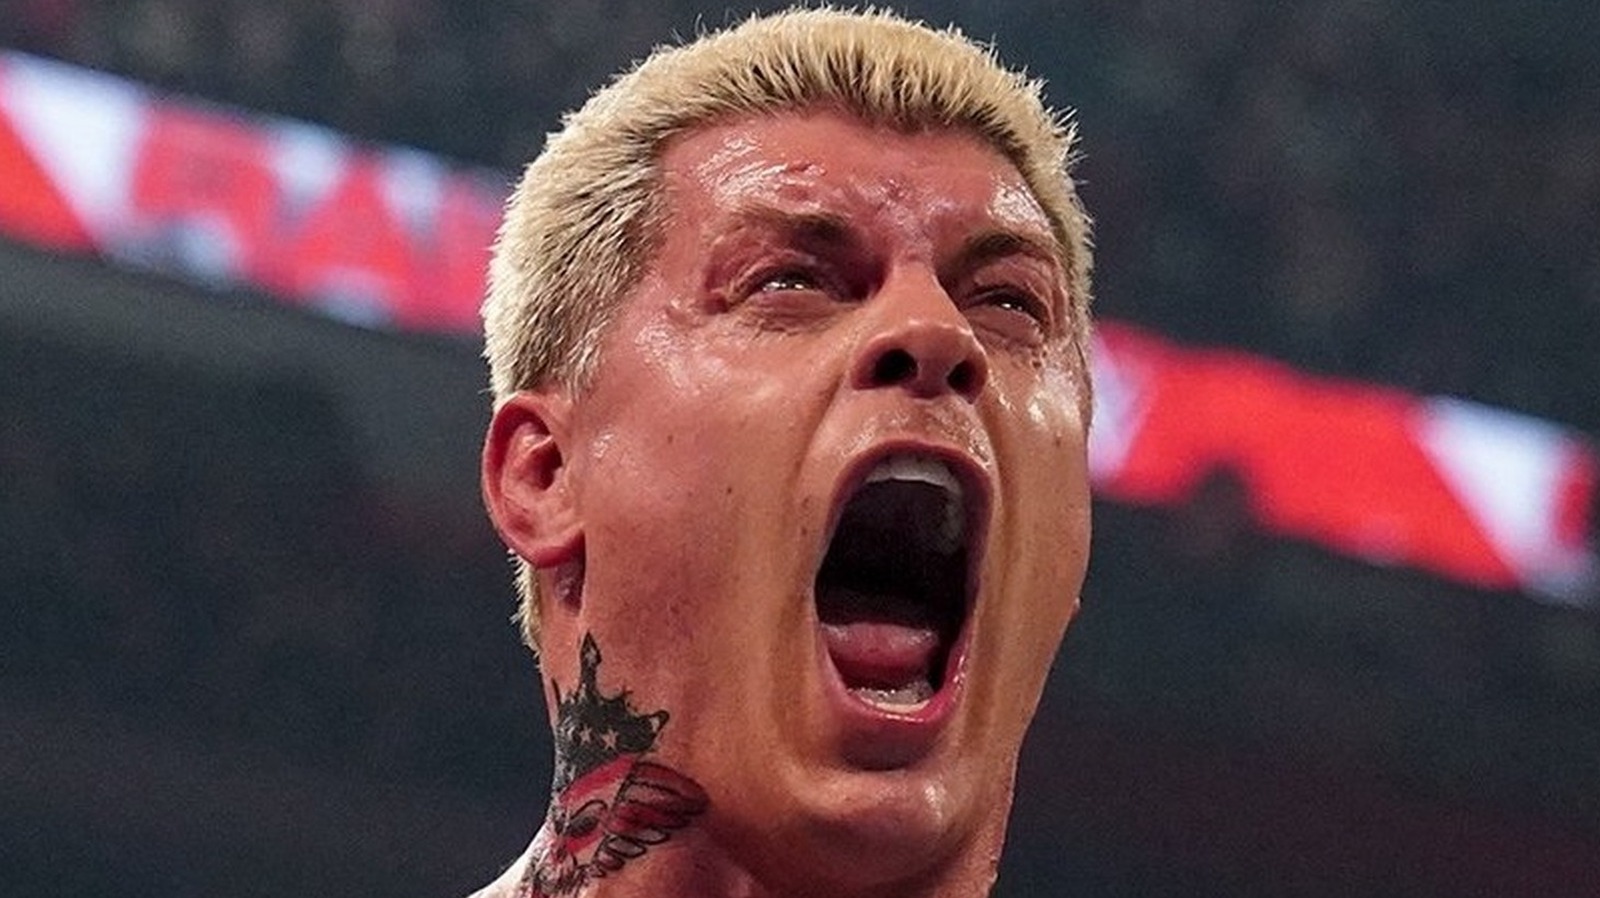 GUNTHER aparece internamente como Top WWE Raw Heel, Cody Rhodes como Top Babyface